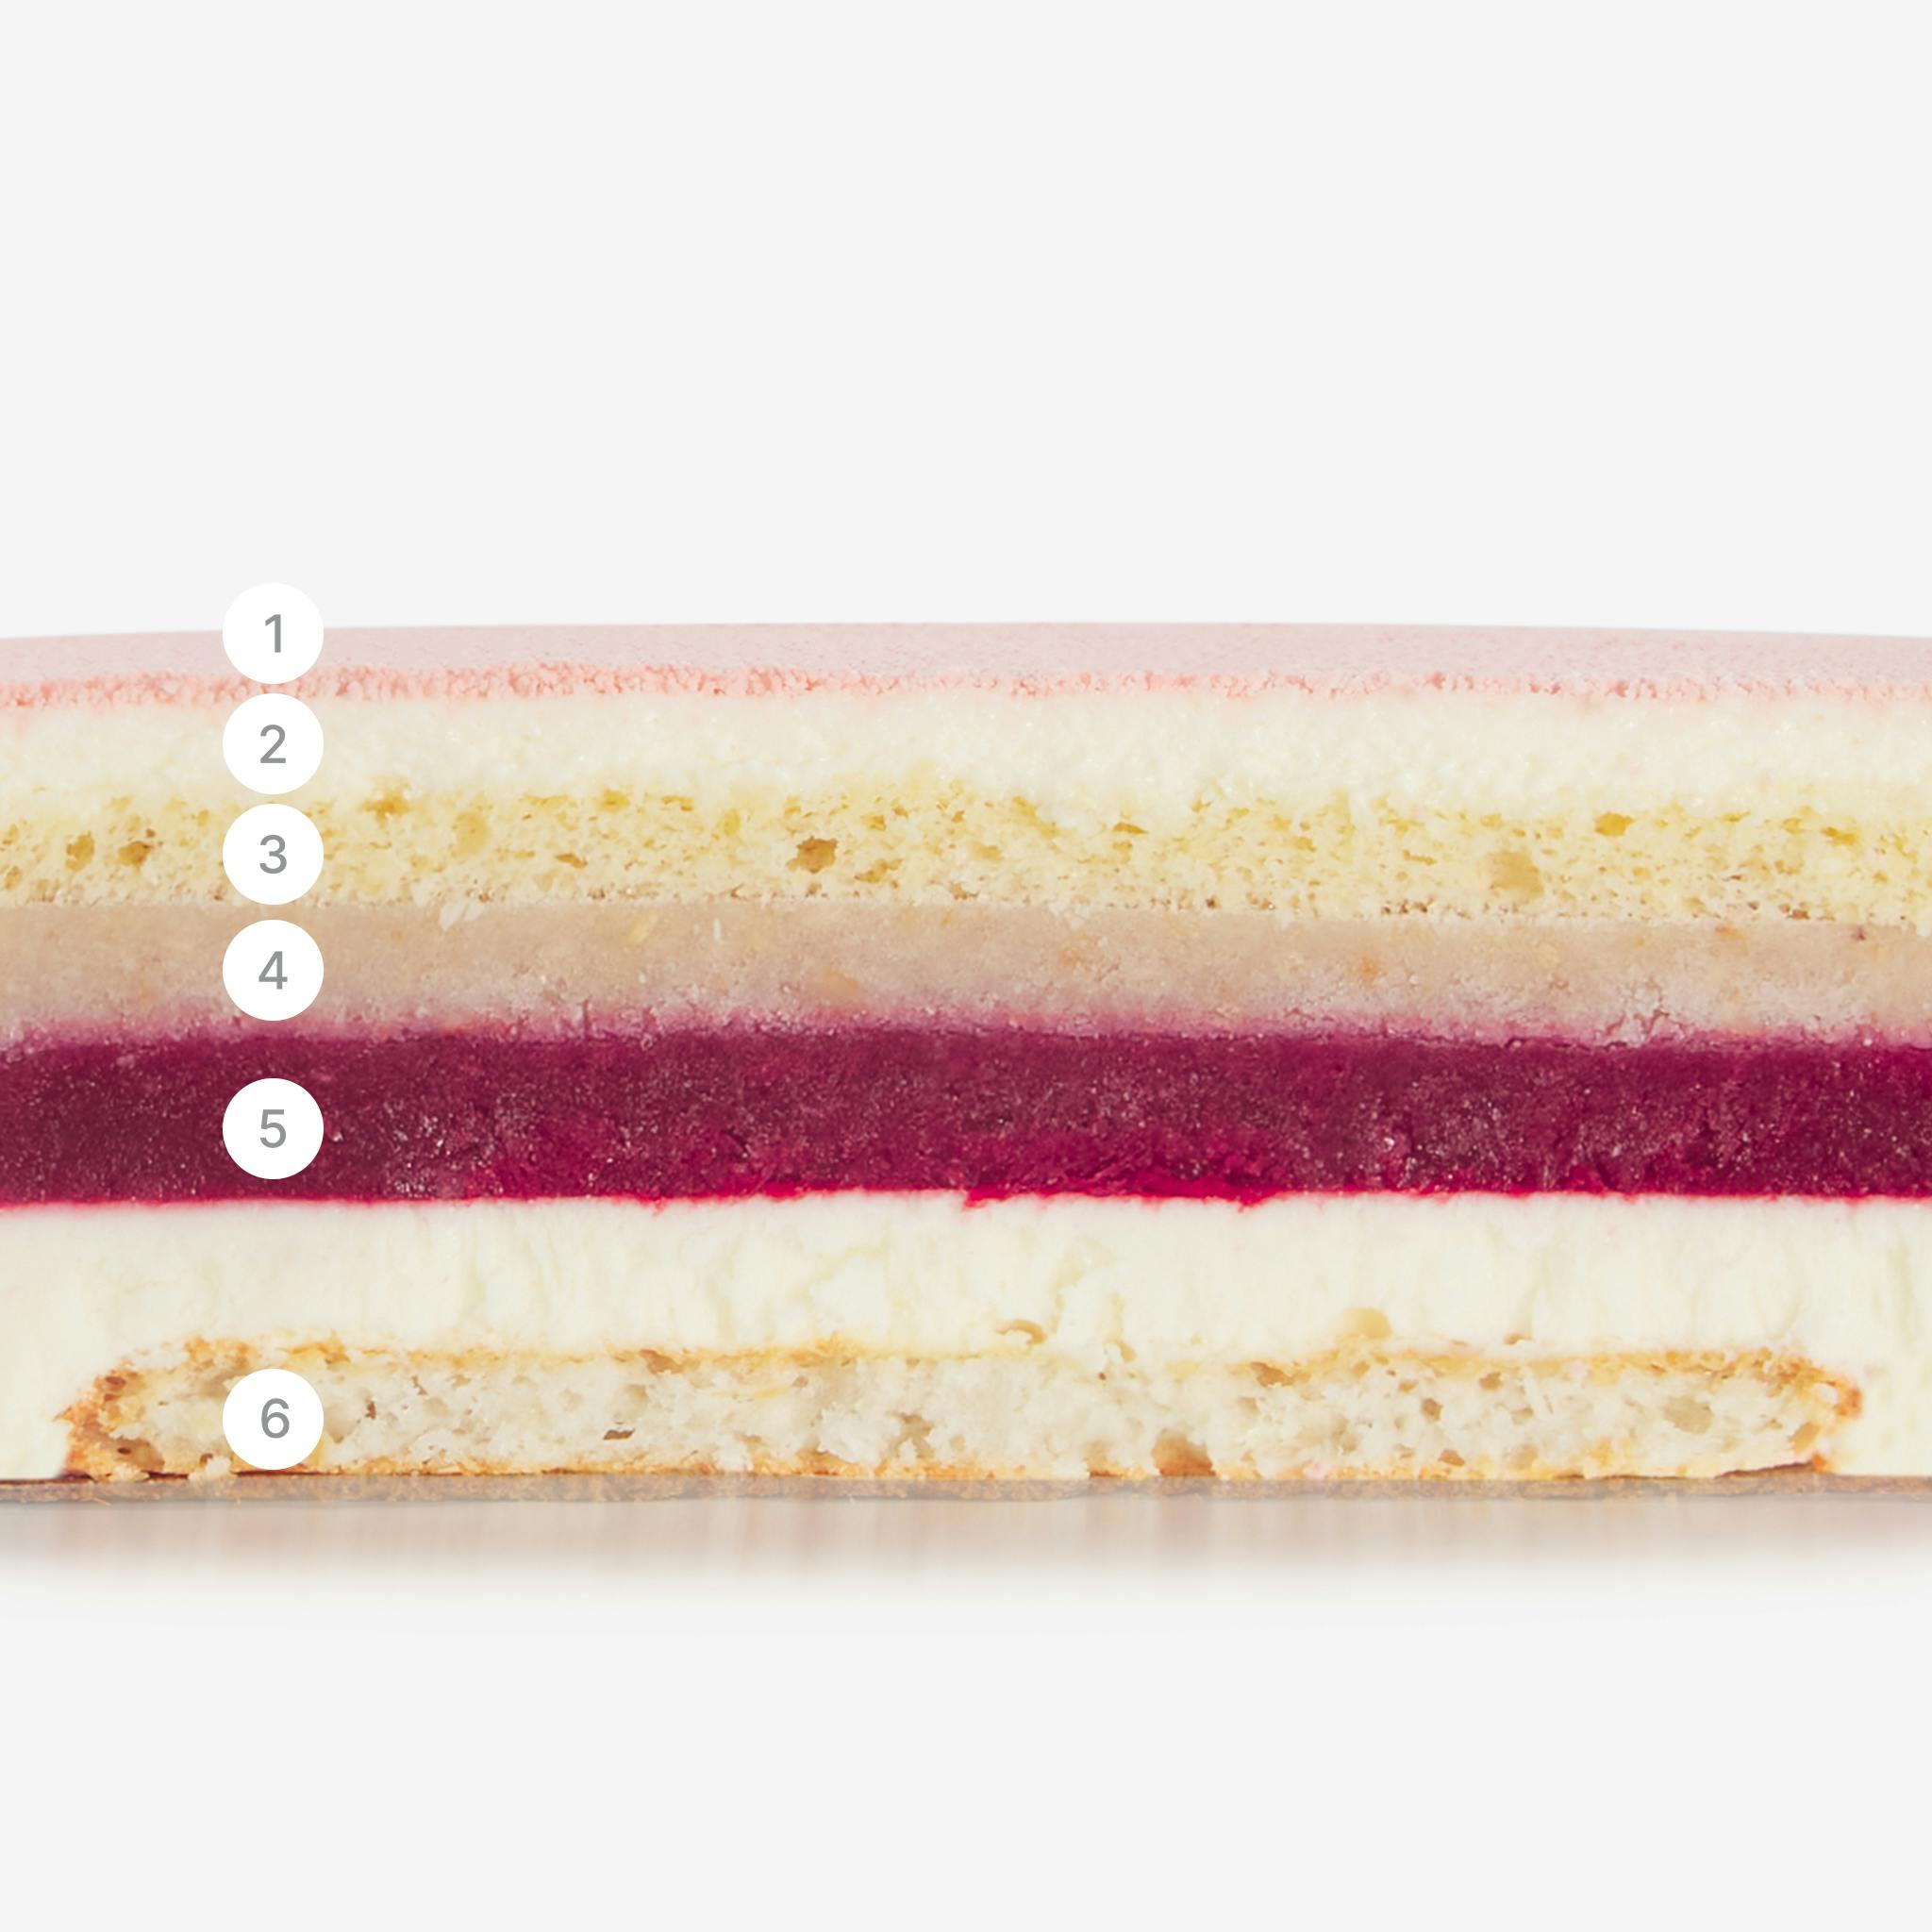 LaFuong Pastry – Be in Blossom – Vải, Phúc bồn tử & Dừa. Mang đến một sự cân bằng tuyệt vời giữa vị chua nhẹ, ngọt thanh và thơm ngậy trong cùng một miếng bánh bằng cách sử dụng vải, dừa và phúc bồn tử. Có thể nói đây chính là sự kết hợp rất thú vị giữa Á & Âu. Không chỉ đặc biệt trong hương vị, lớp bạt bánh của Be in Blossom cũng có hai kết cấu khác nhau: cảm giác mềm xốp đến từ lớp Sponge dừa và một chút độ giòn của sợi dừa tươi nằm trong lớp bạt Dacquoise. ,Đây không chỉ là một món quà tuyệt vời, mà còn là lựa chọn xứng đáng cho mọi bữa tiệc sinh nhật, gặp gỡ bạn bè hay các dịp họp mặt gia đình.